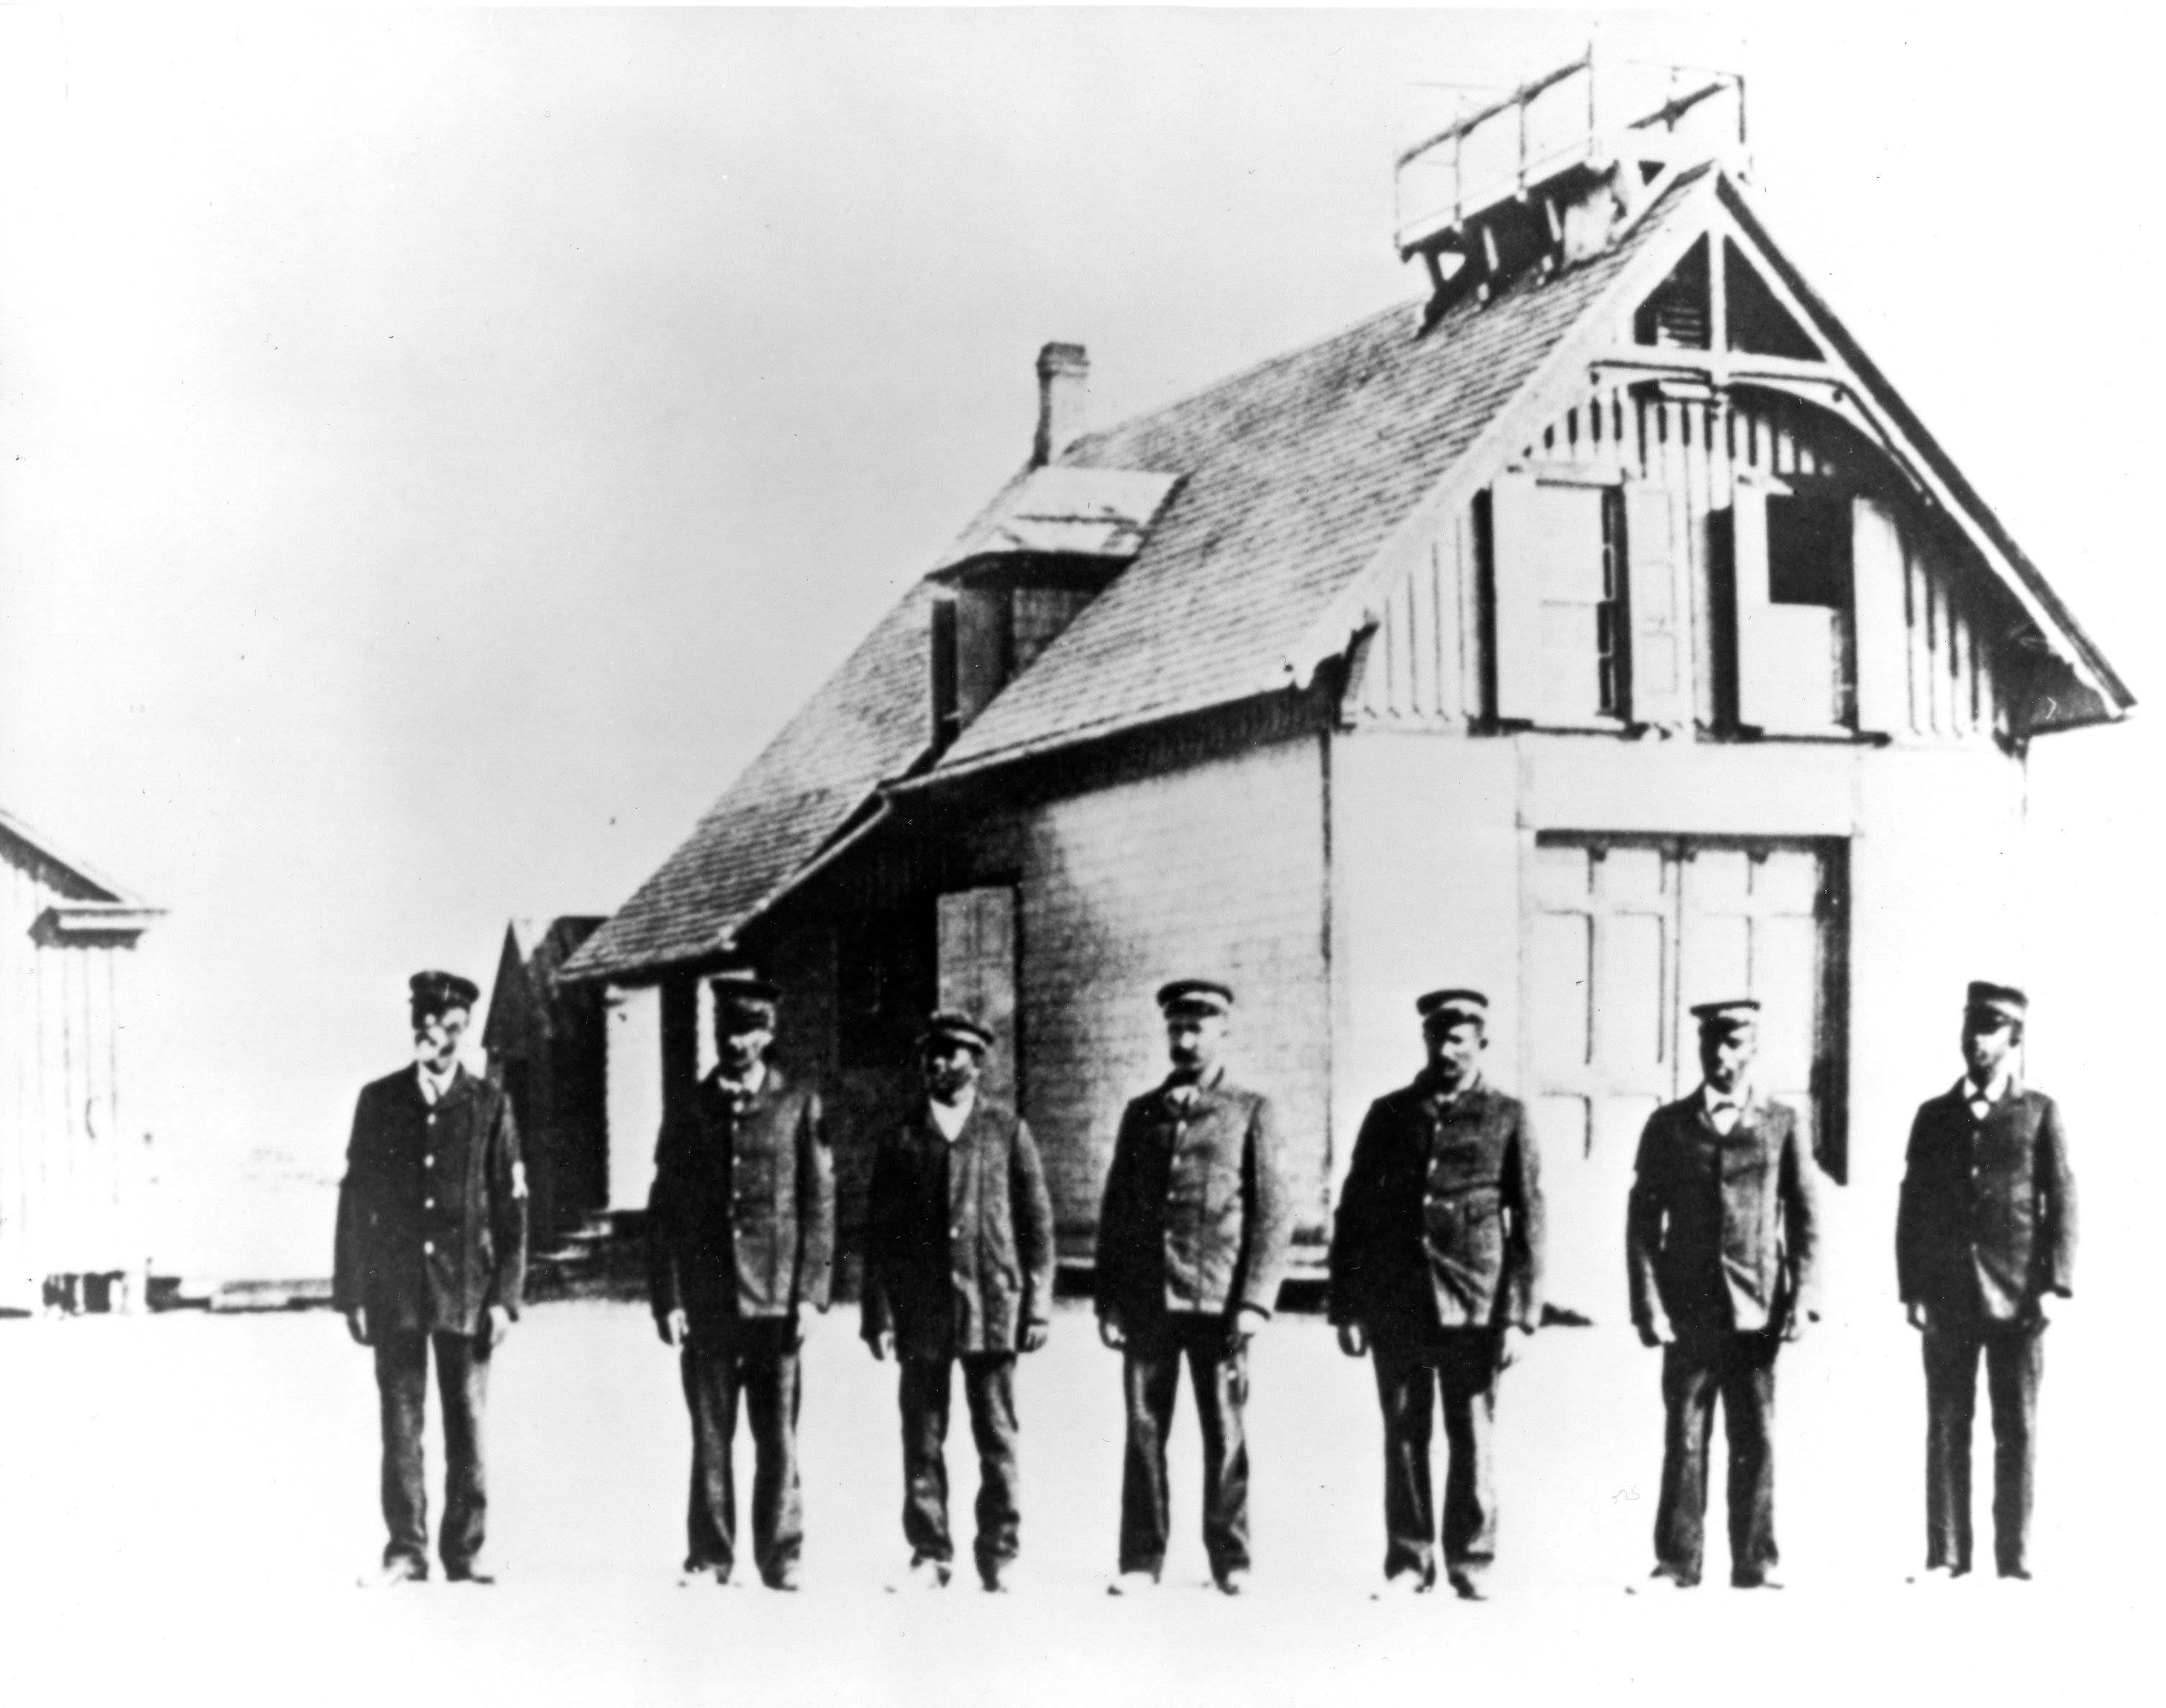 Richard Etheridge berdiri paling kiri, bersama kru penyelamat keturunan Afrika-Amerika, berdiri di depan Pos Penyelamat Pulau Pea Circa 1890. Dokumentasi : U.S. Coast Guard photo.